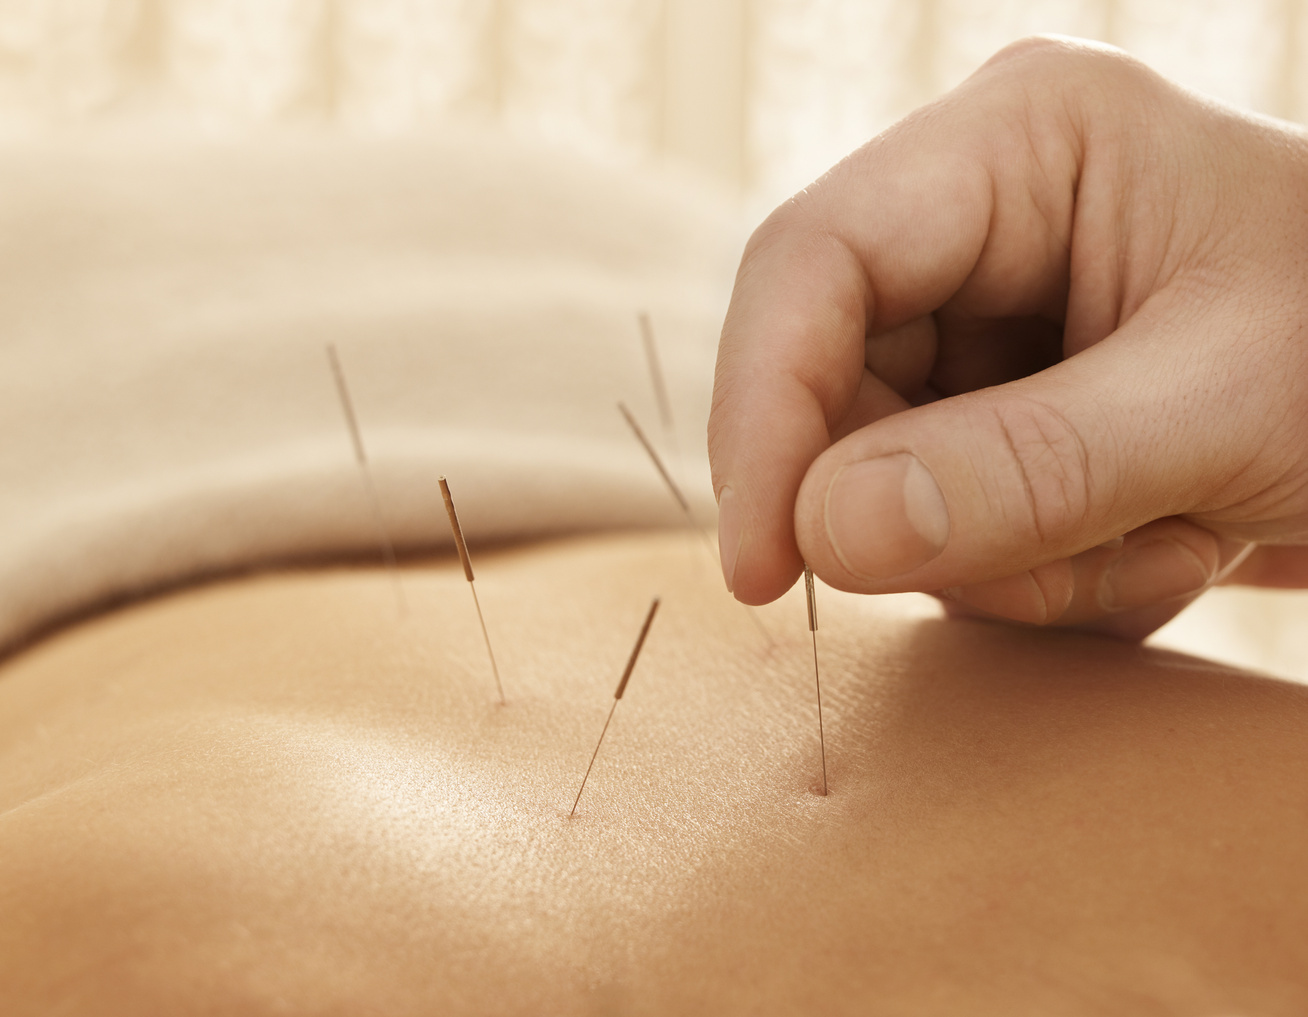 Hogy segíthet az akupunktúra a fogyásban? A szakértő válaszol - Fogyókúra | Femina